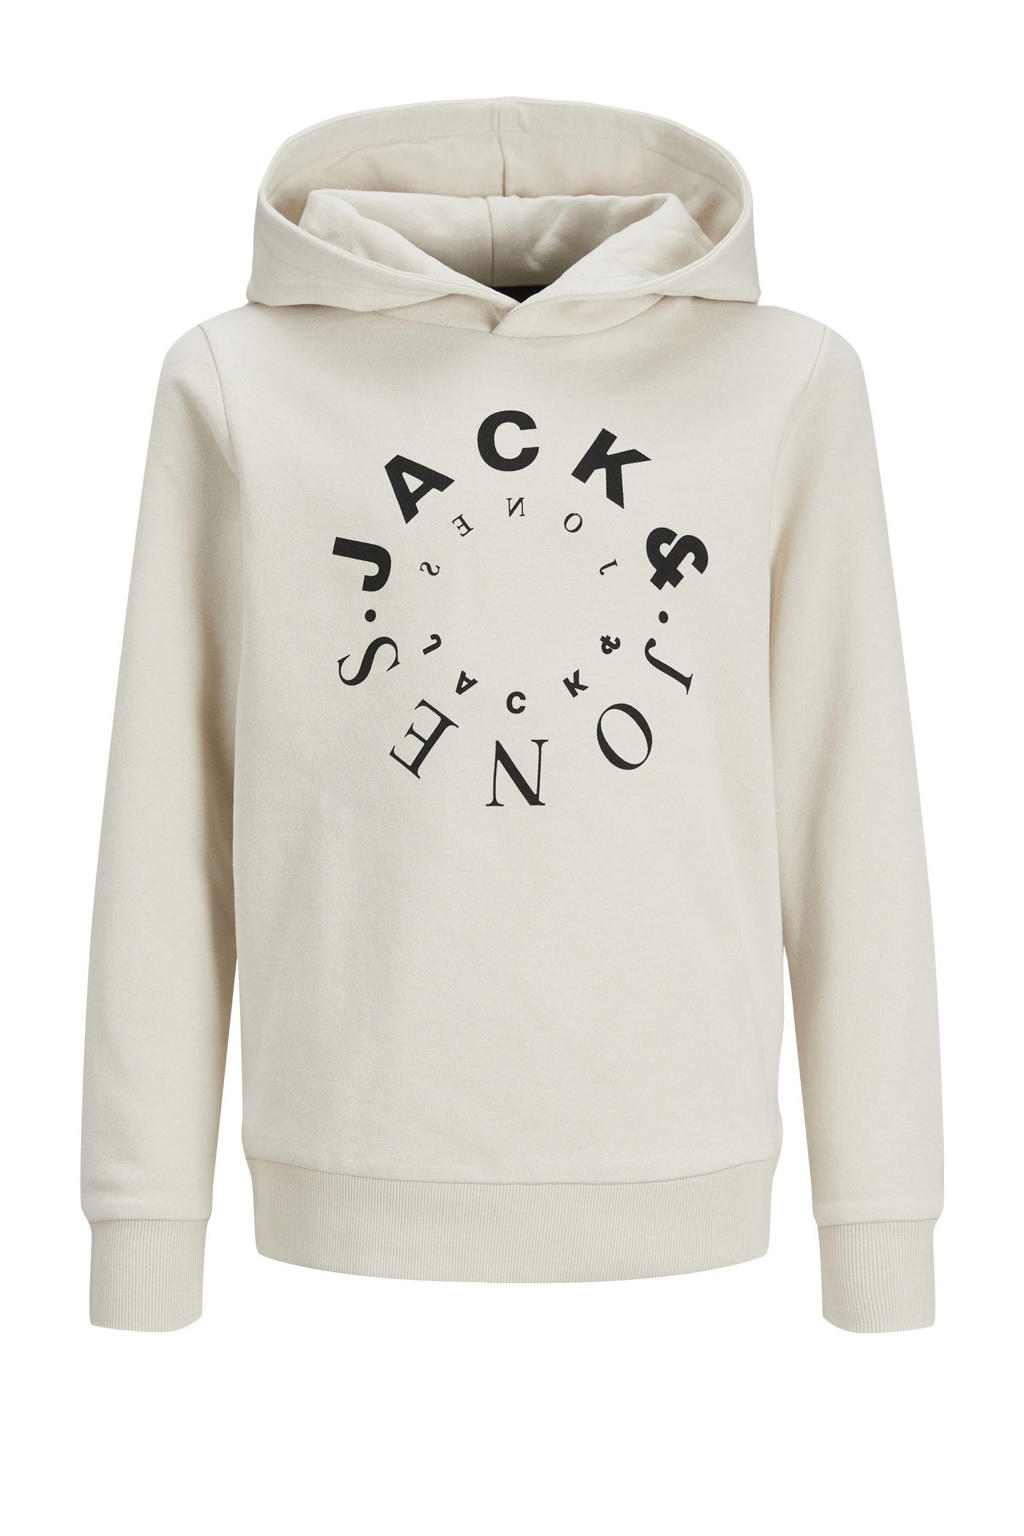 Beige jongens JACK & JONES JUNIOR hoodie van sweat materiaal met logo dessin, lange mouwen en capuchon